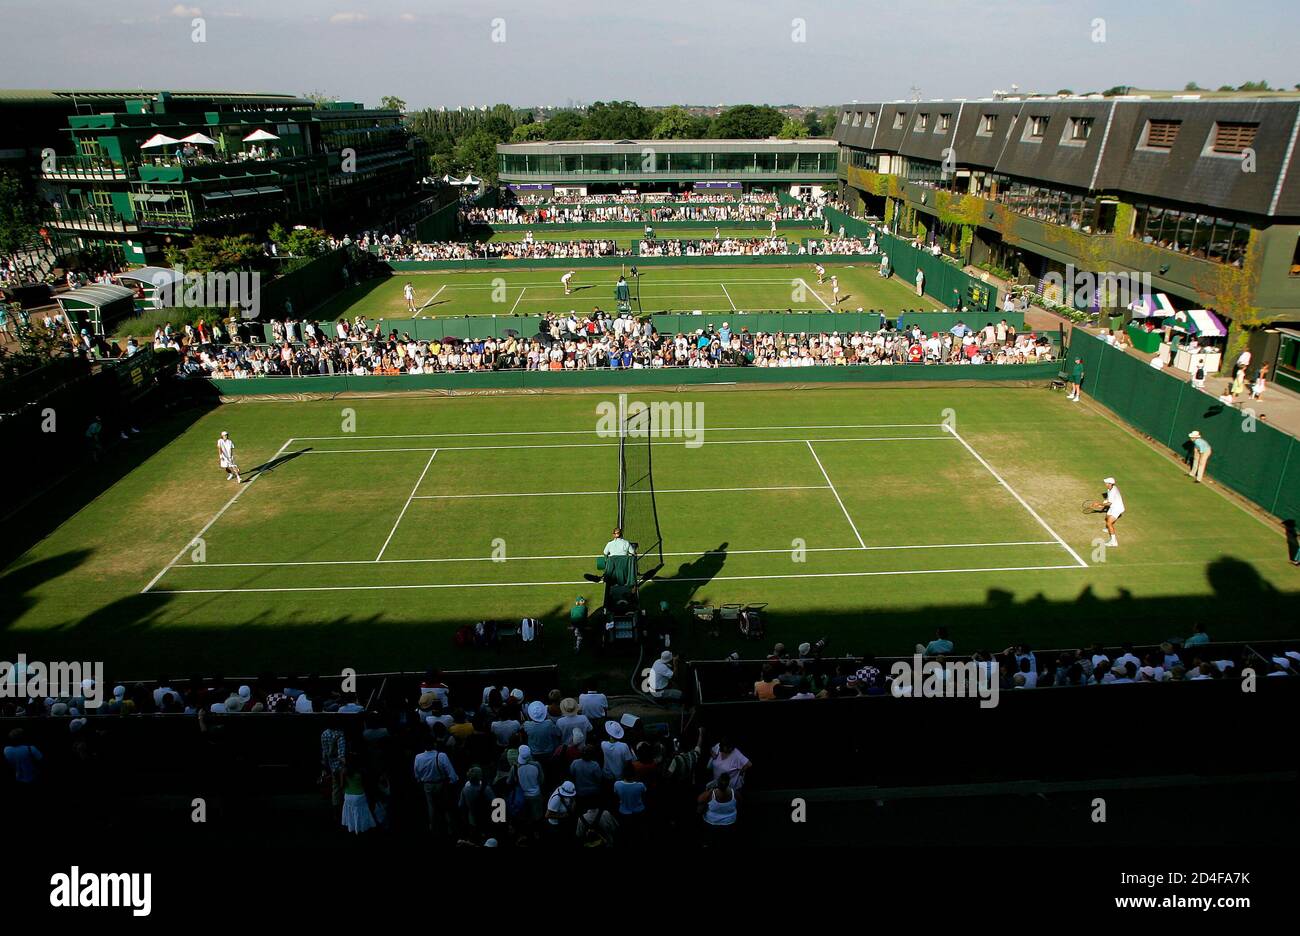 44 HQ Photos Grass Tennis Courts London / 1